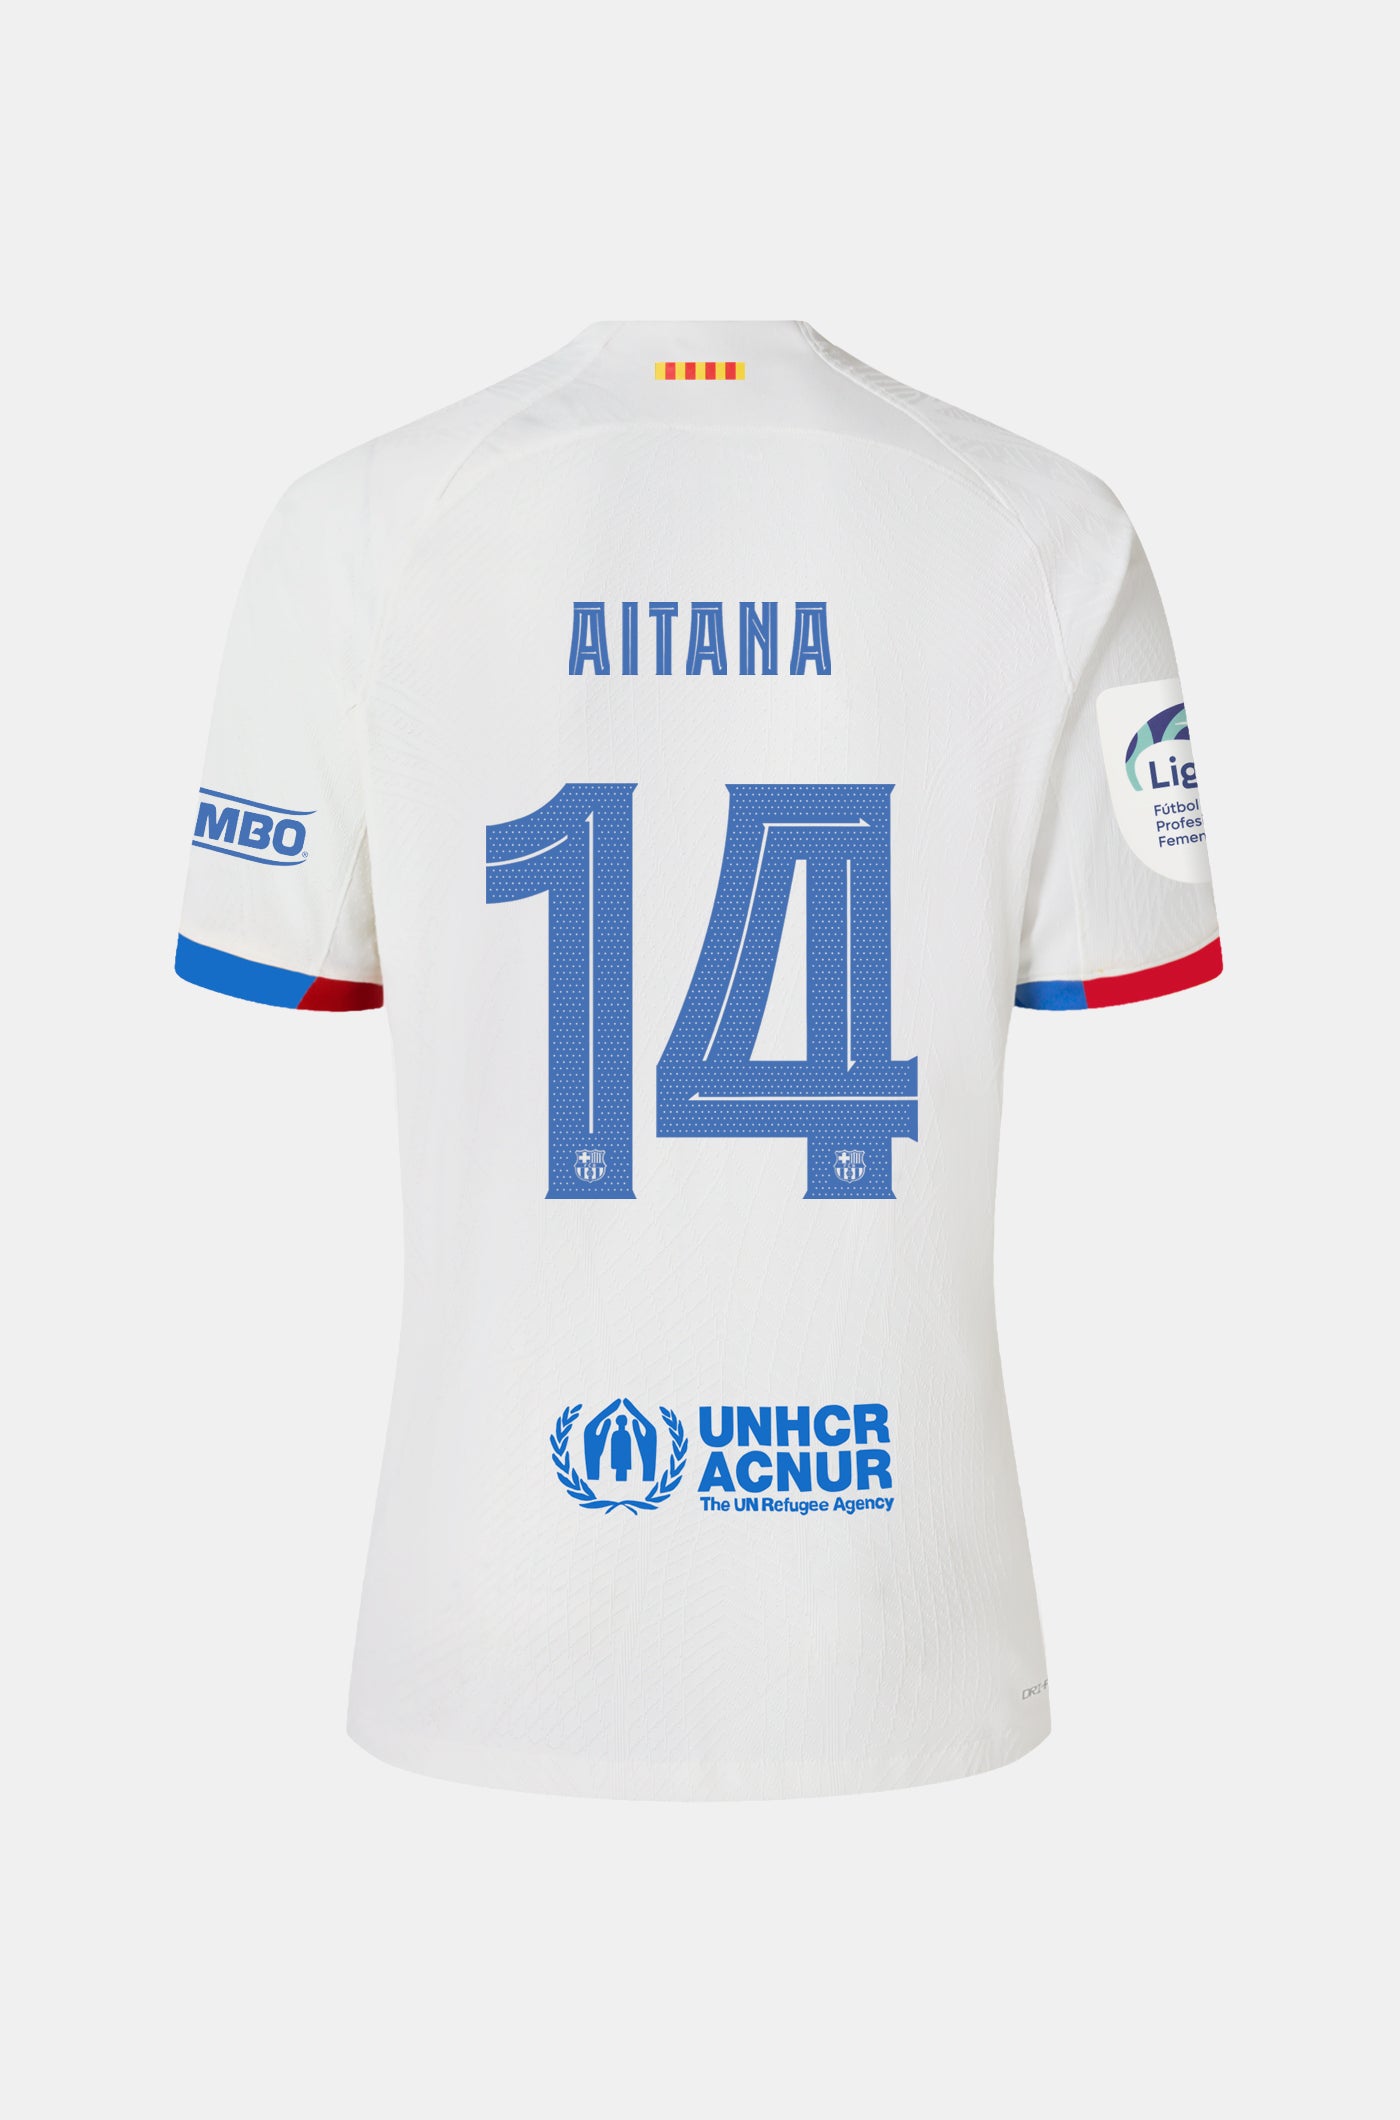 Liga F FC Barcelona away shirt 23/24 - Women  - AITANA